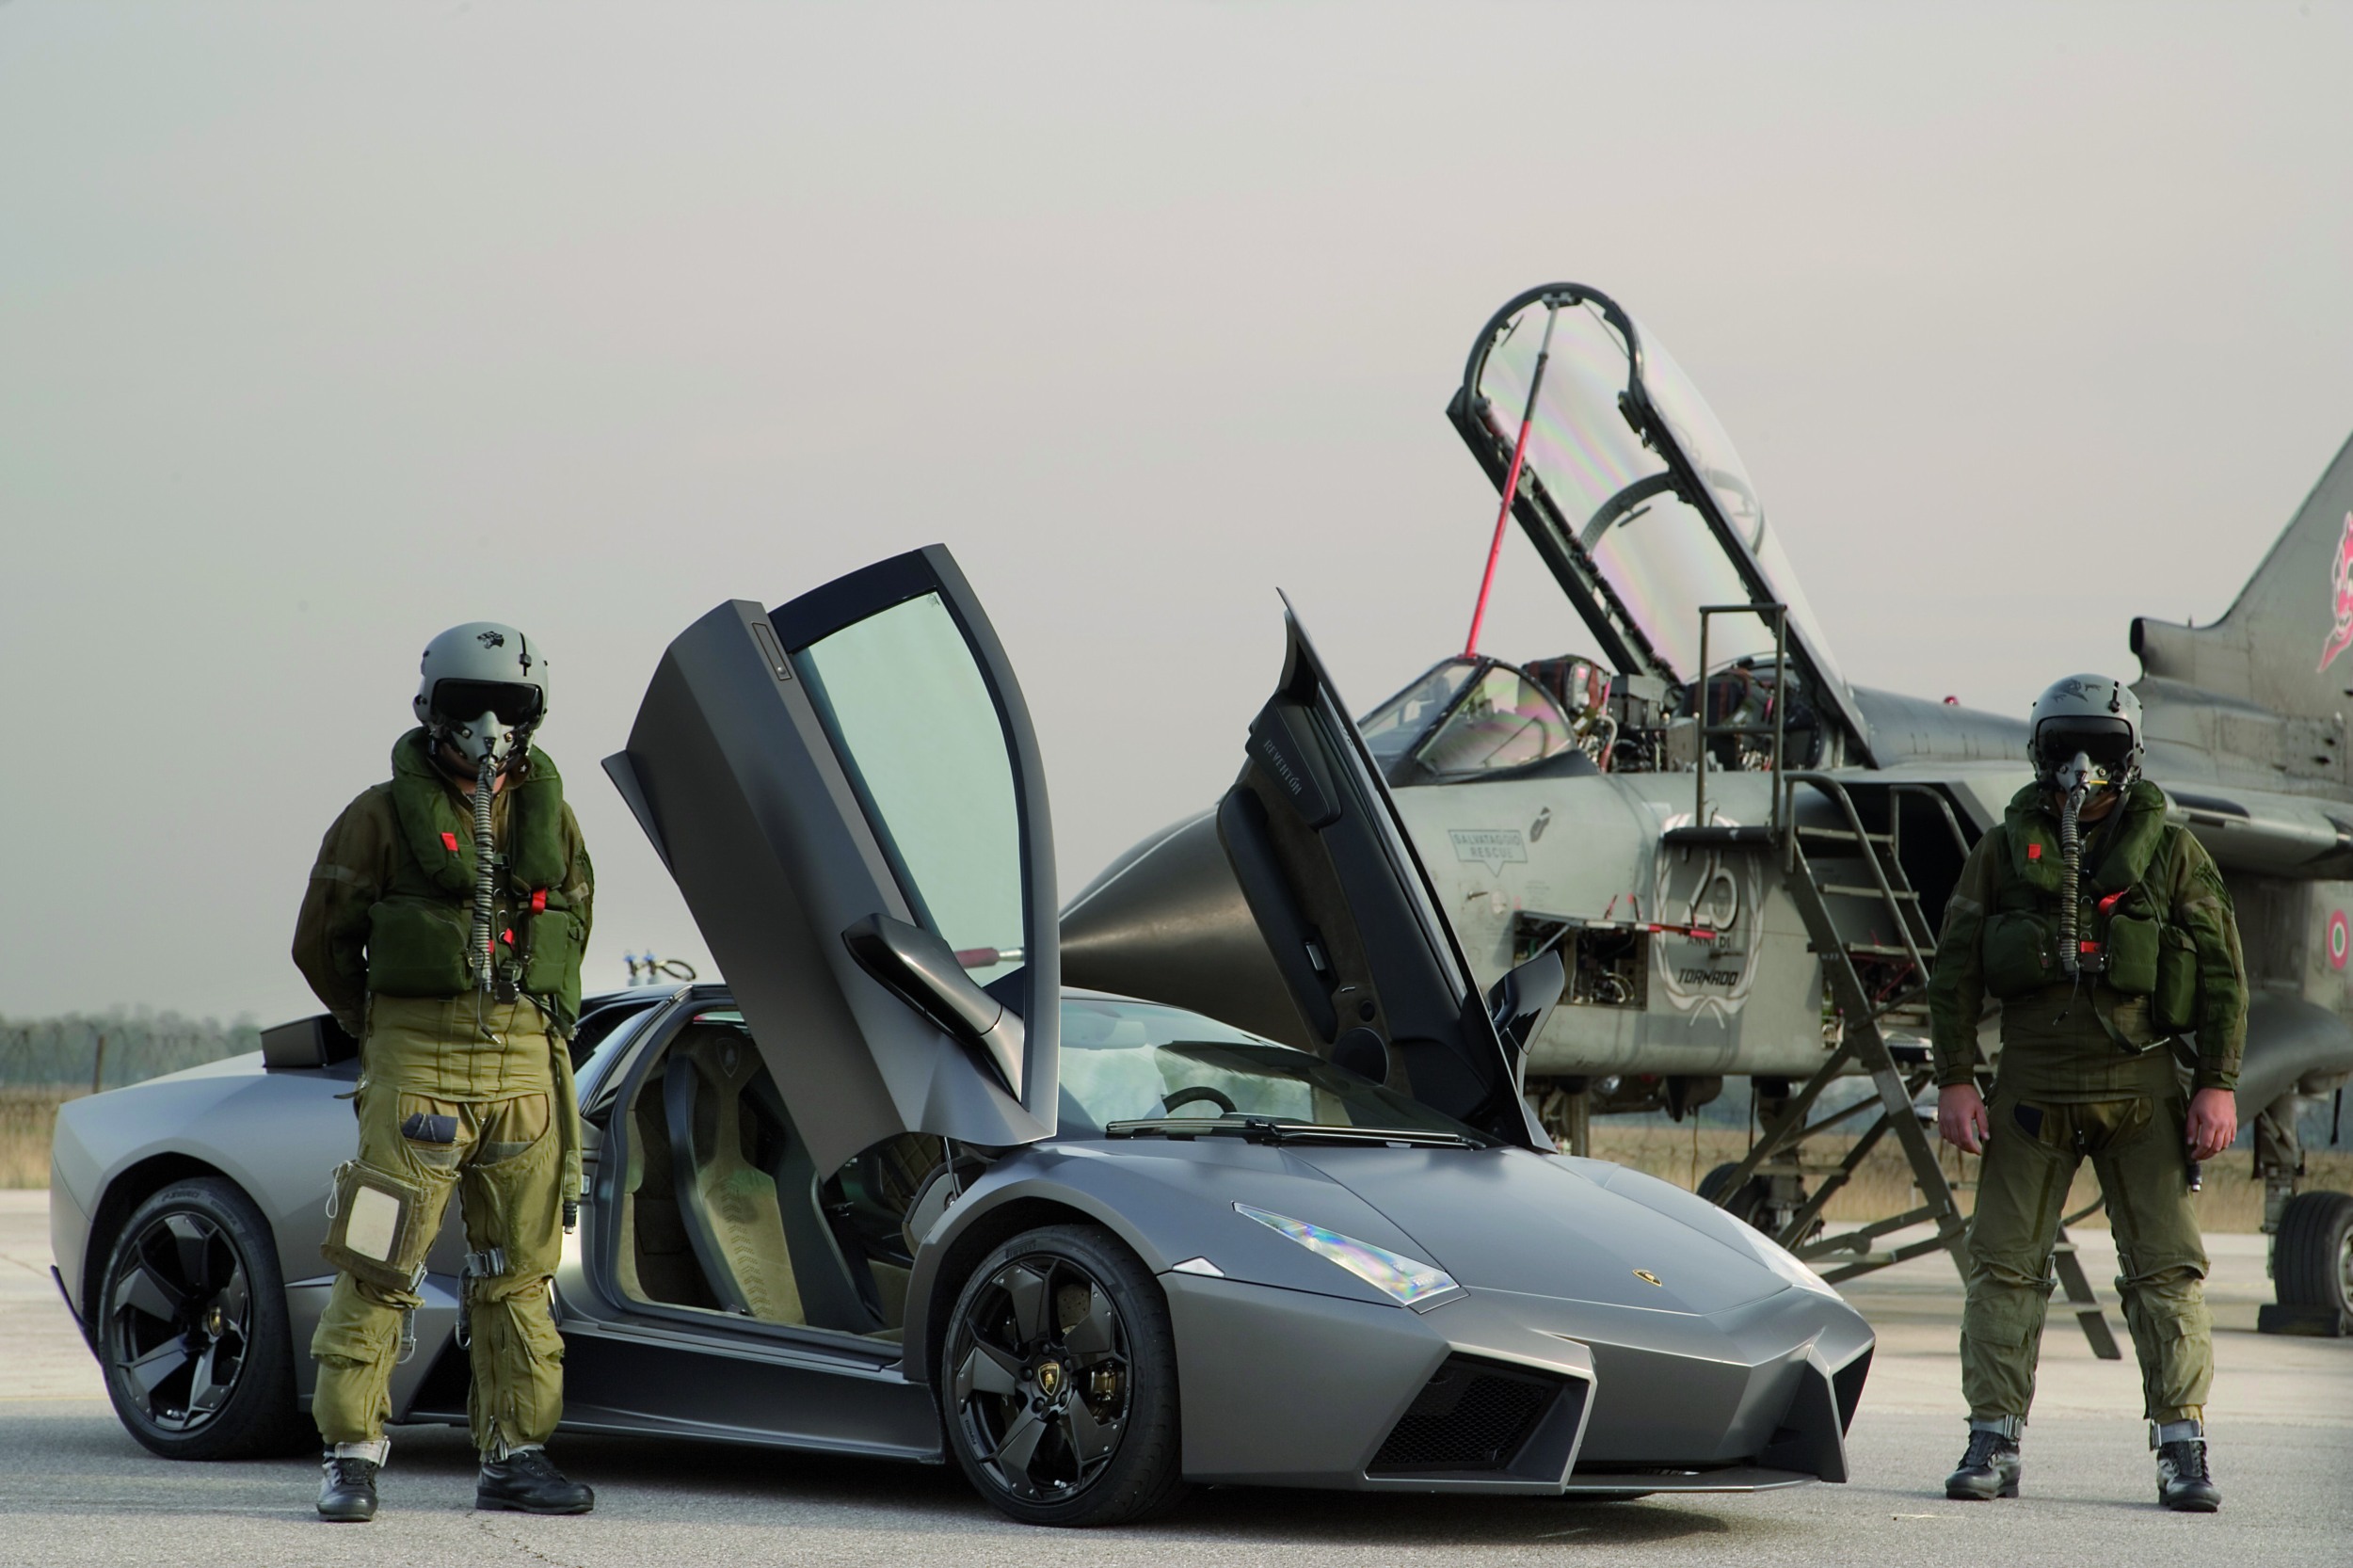 автомобили, пилот, самолеты, Lamborghini Reventon, ВВС Италии, Panavia Tornado, бойцы - обои на рабочий стол